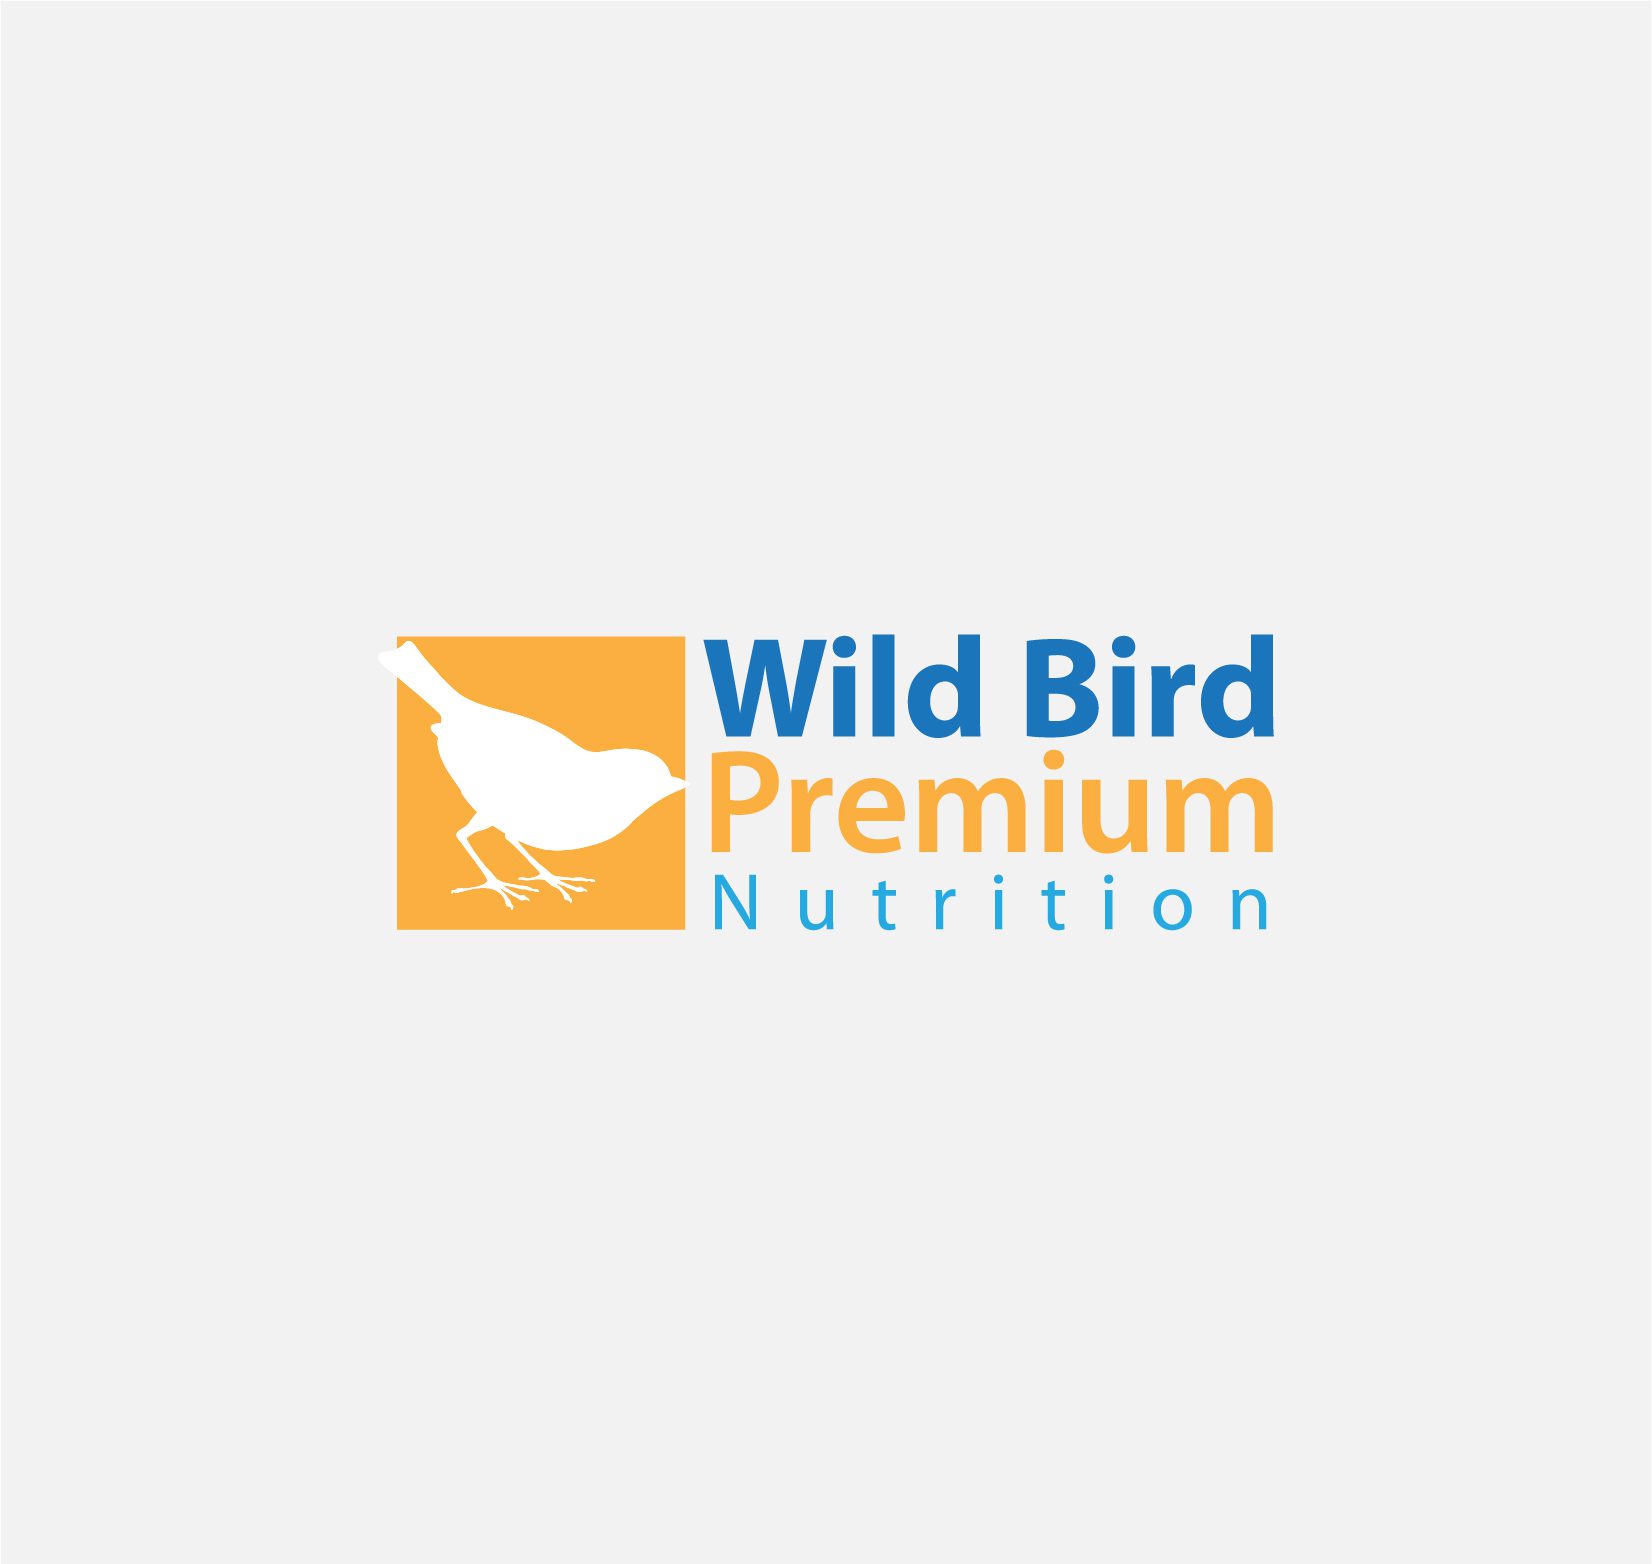 Wild Bird Premium Nutrition logo